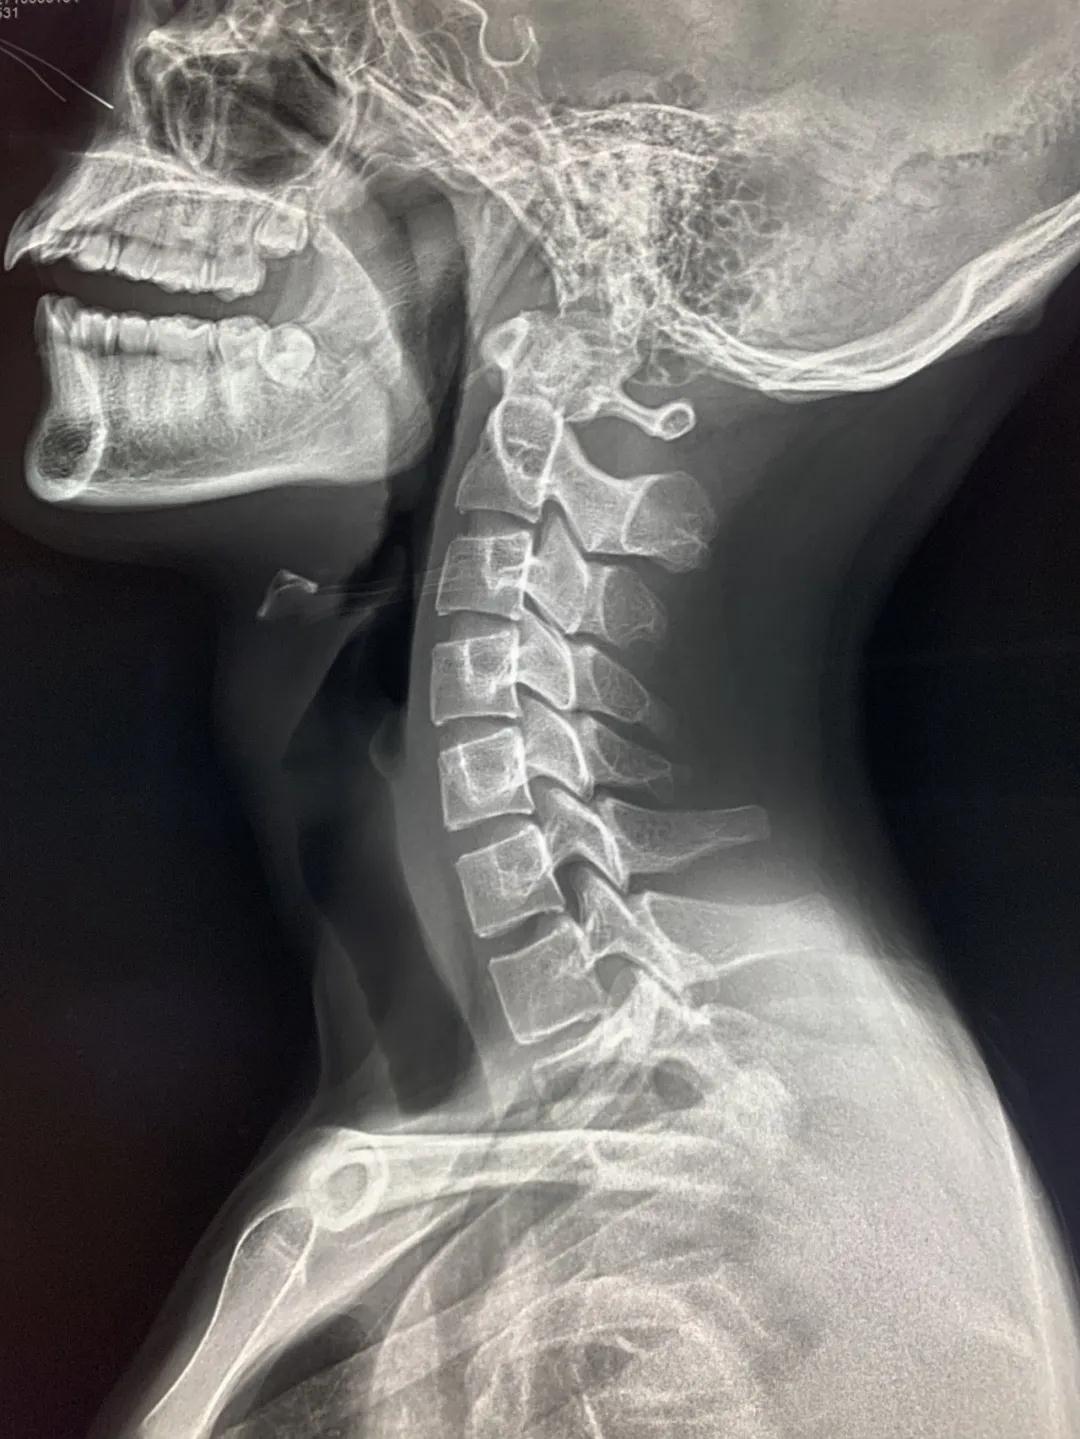 7.颈椎的形态-基础医学-医学